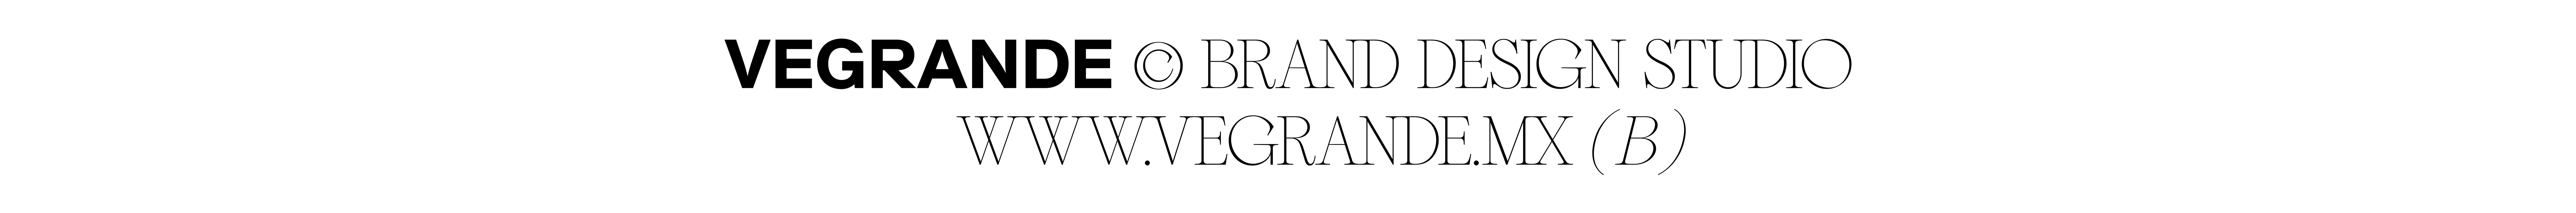 Banner del profilo di VEGRANDE ®